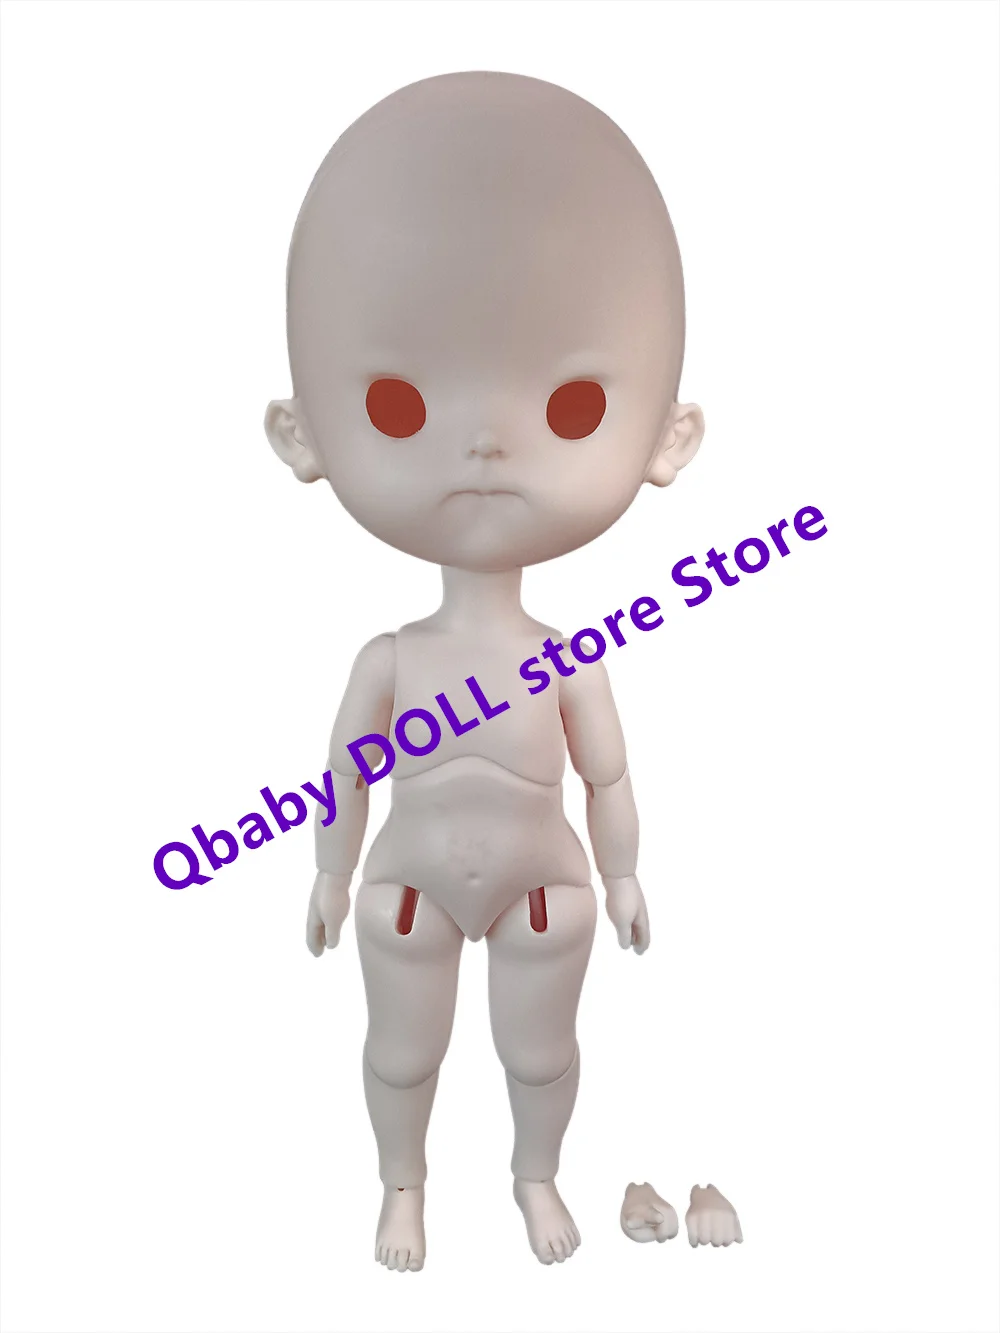 

Qbaby Doll store 1 / 6 regalos de juguetes de resina aya C